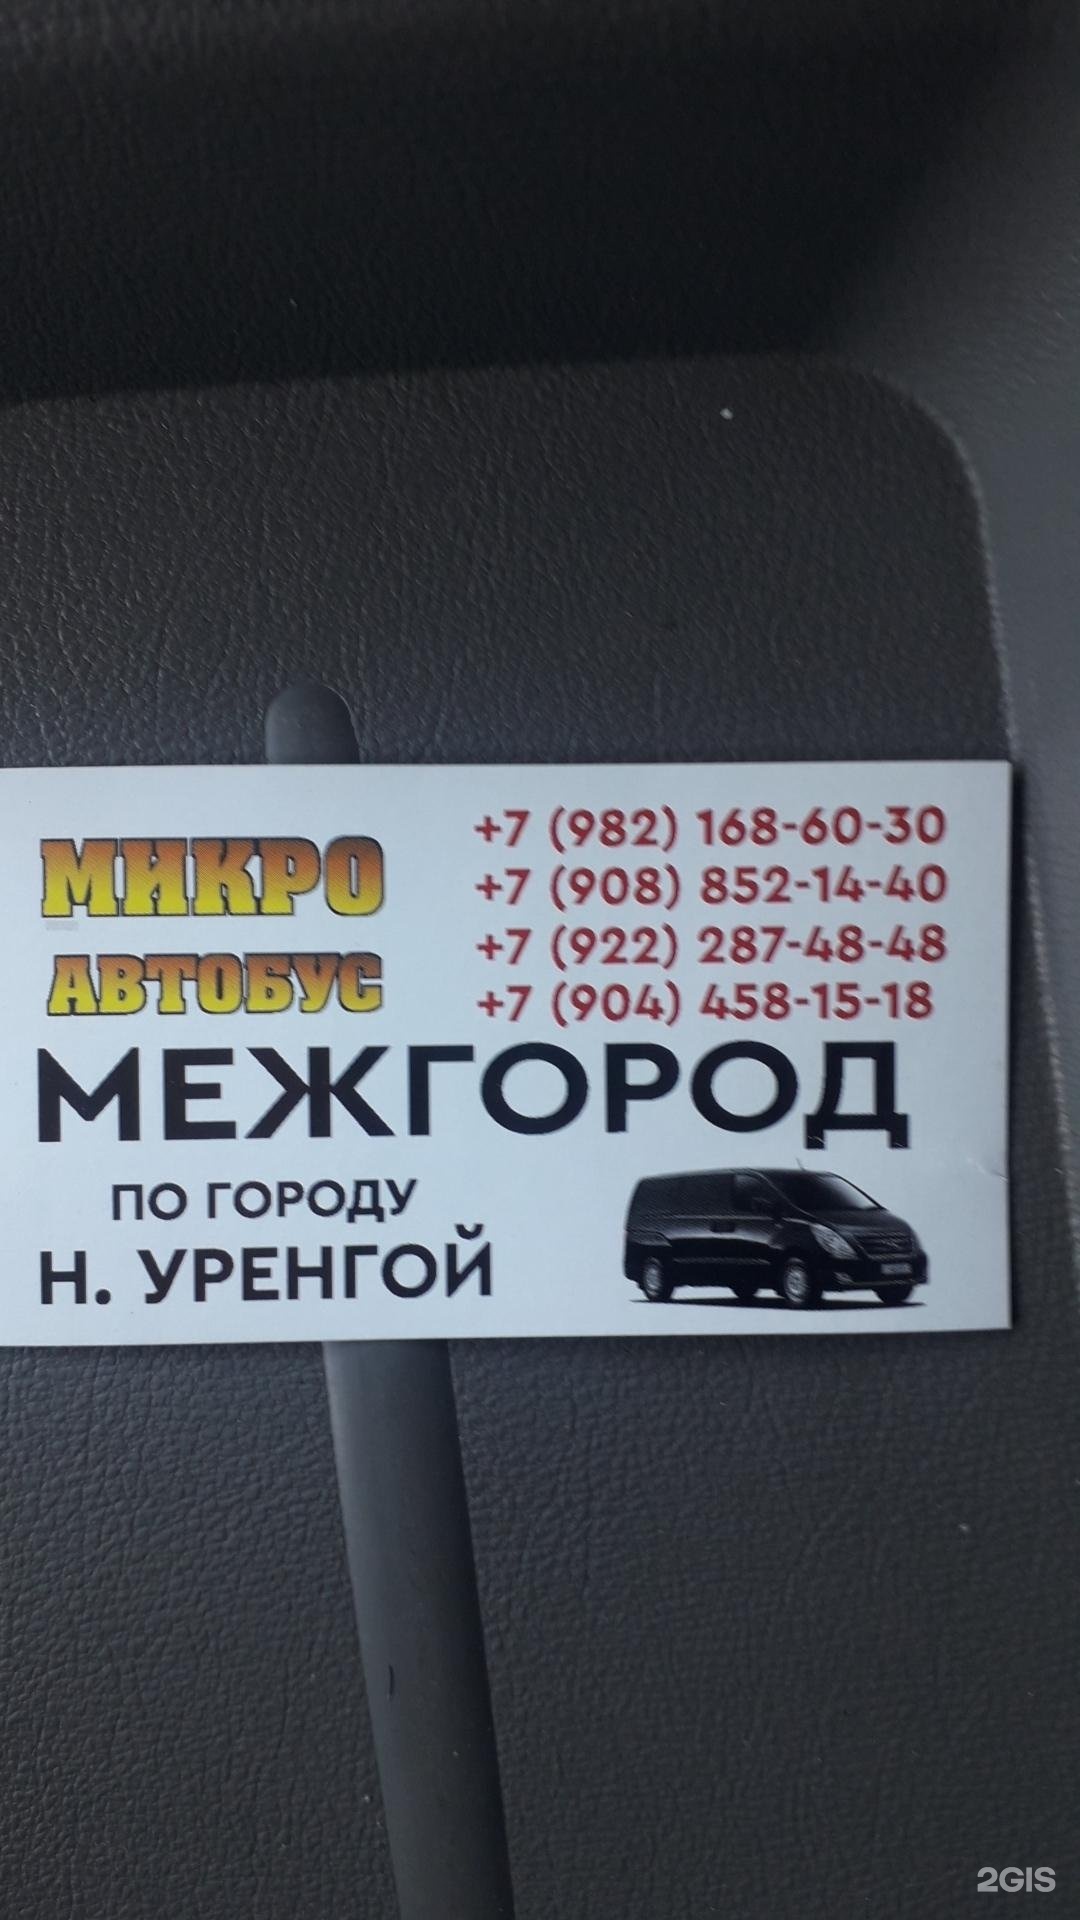 Такси в томске номера телефонов